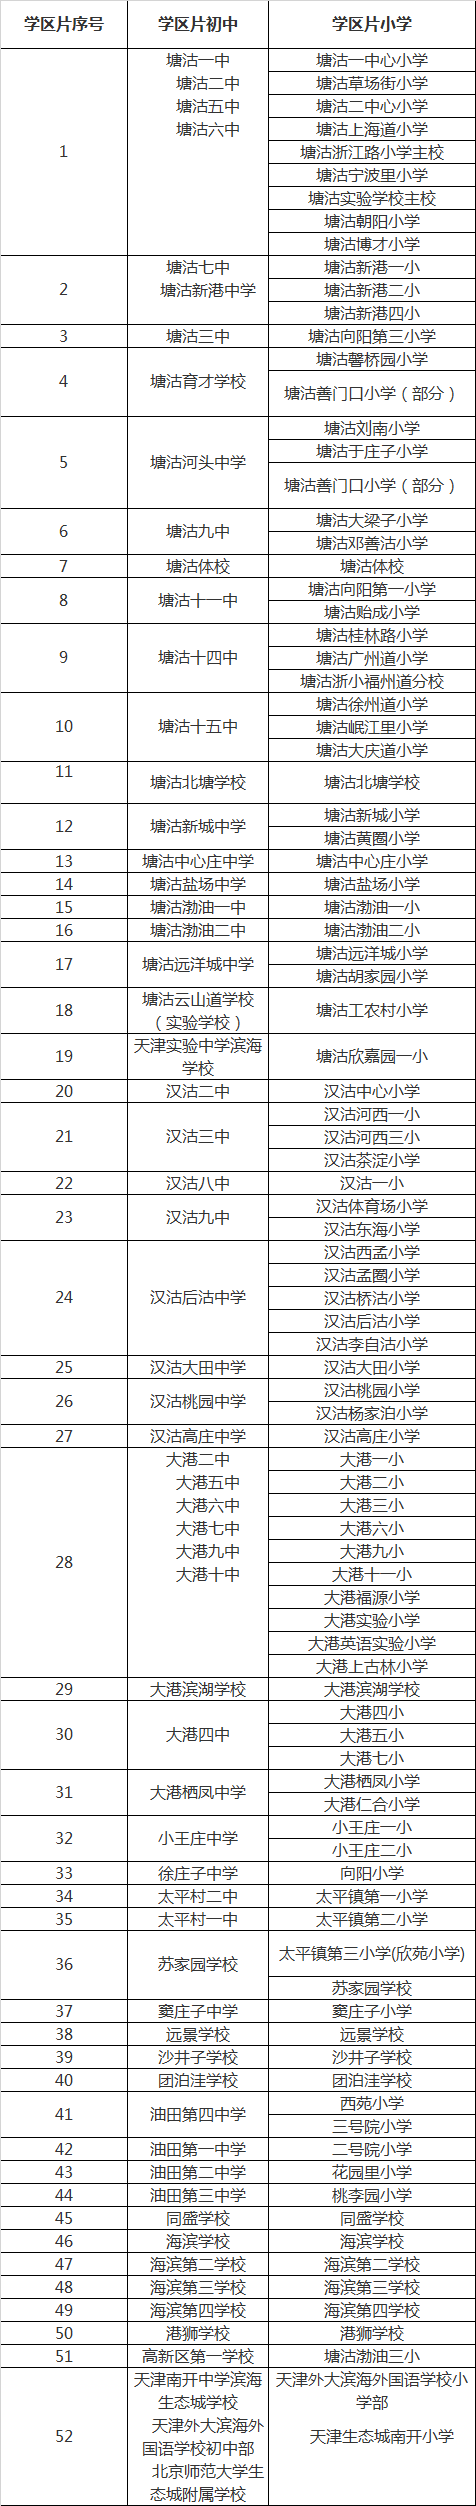 2018年天津各区小学对口初中划片情况一览表